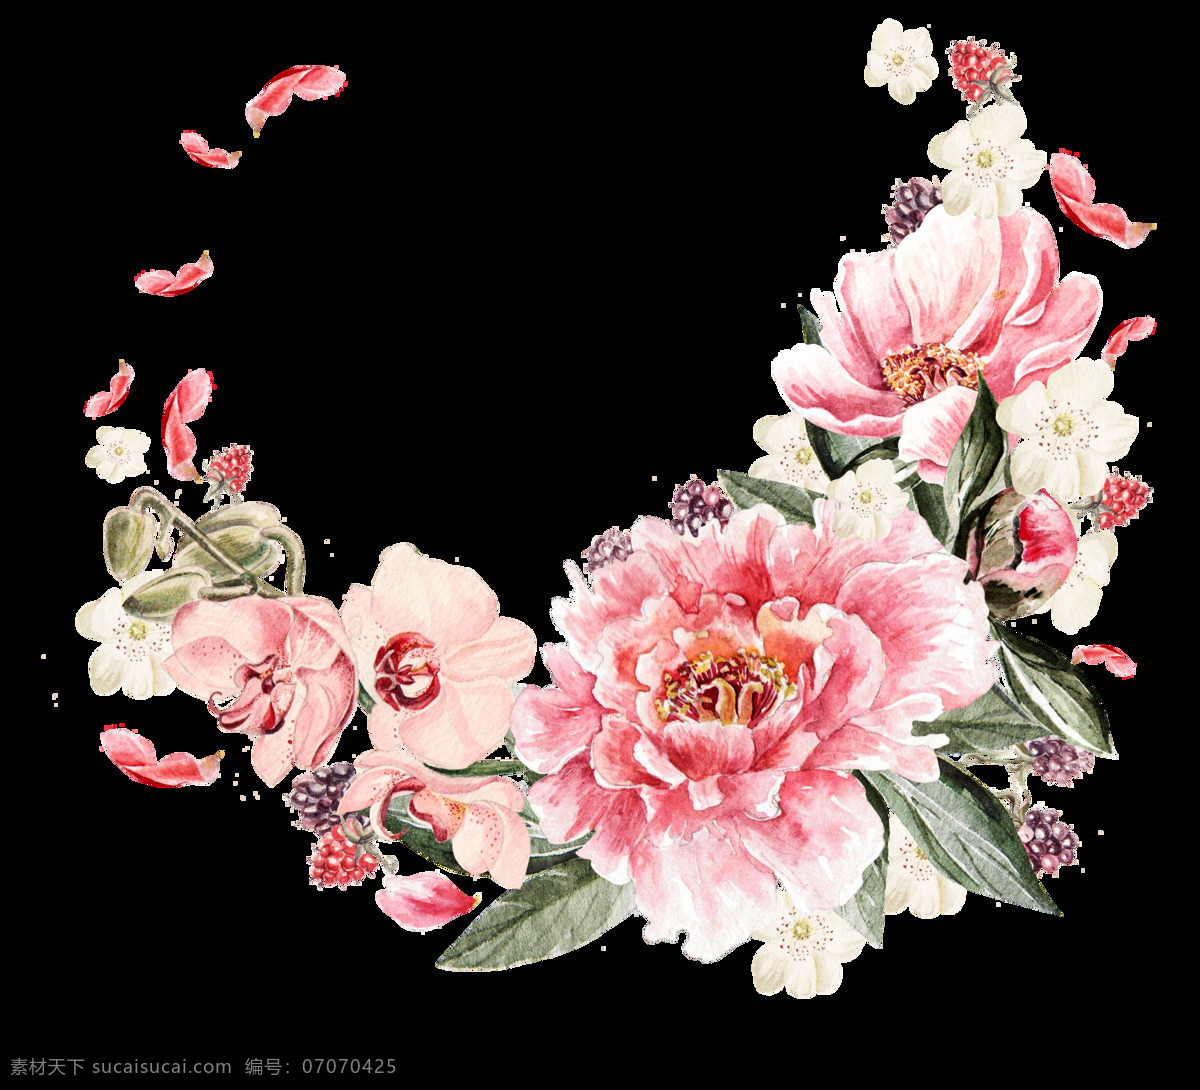 春意盎然 花卉 透明 春意 盎然 卡通 抠图专用 装饰 设计素材